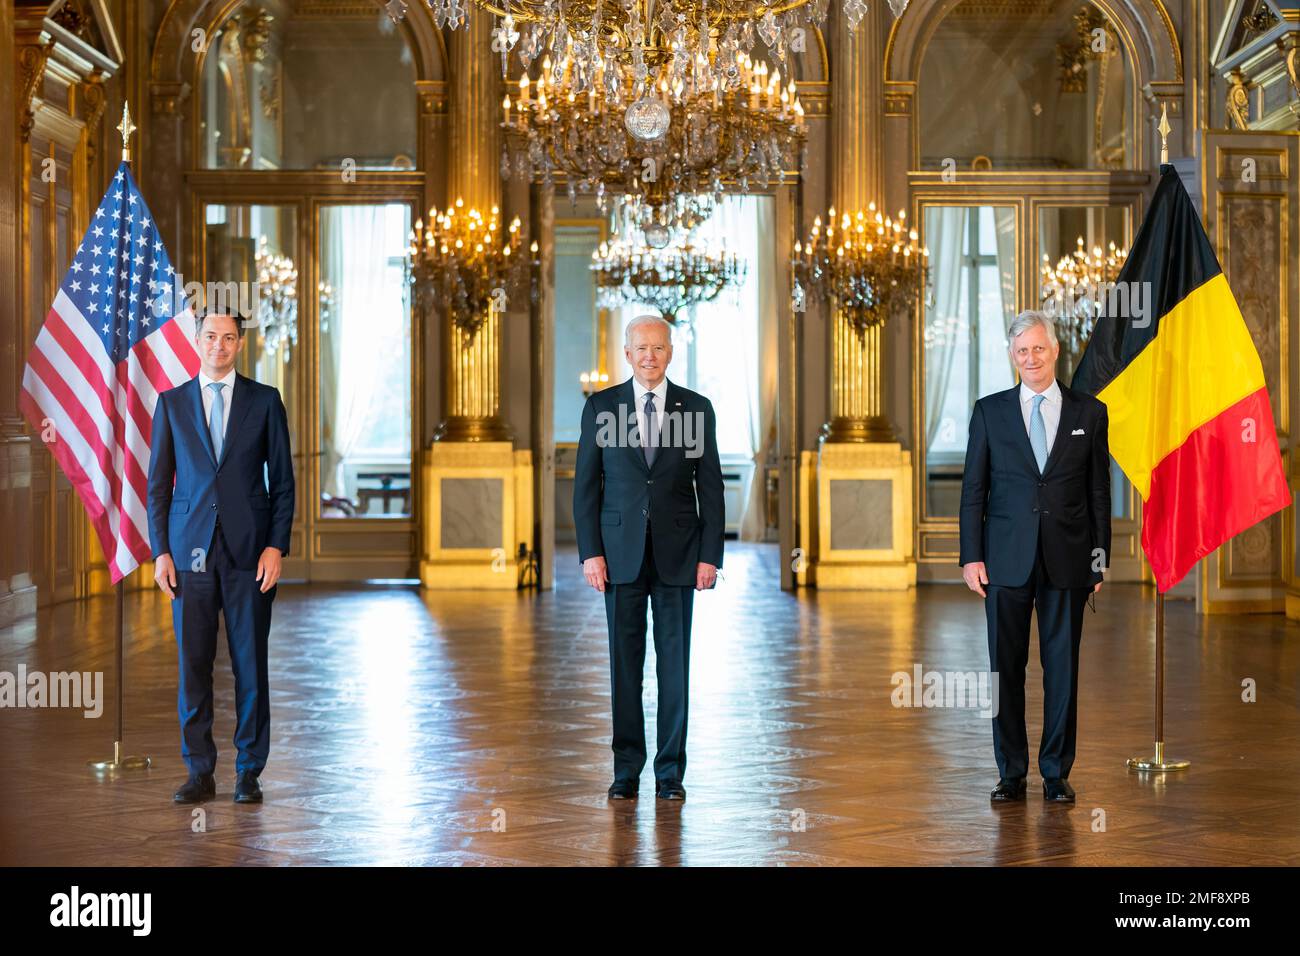 Reportage: Präsident Joe Biden posiert am Dienstag, den 15. Juni 2021 im Königspalast in Brüssel für Fotos mit König Phillipe von Belgien und dem belgischen Premierminister Alexander De Croo Stockfoto